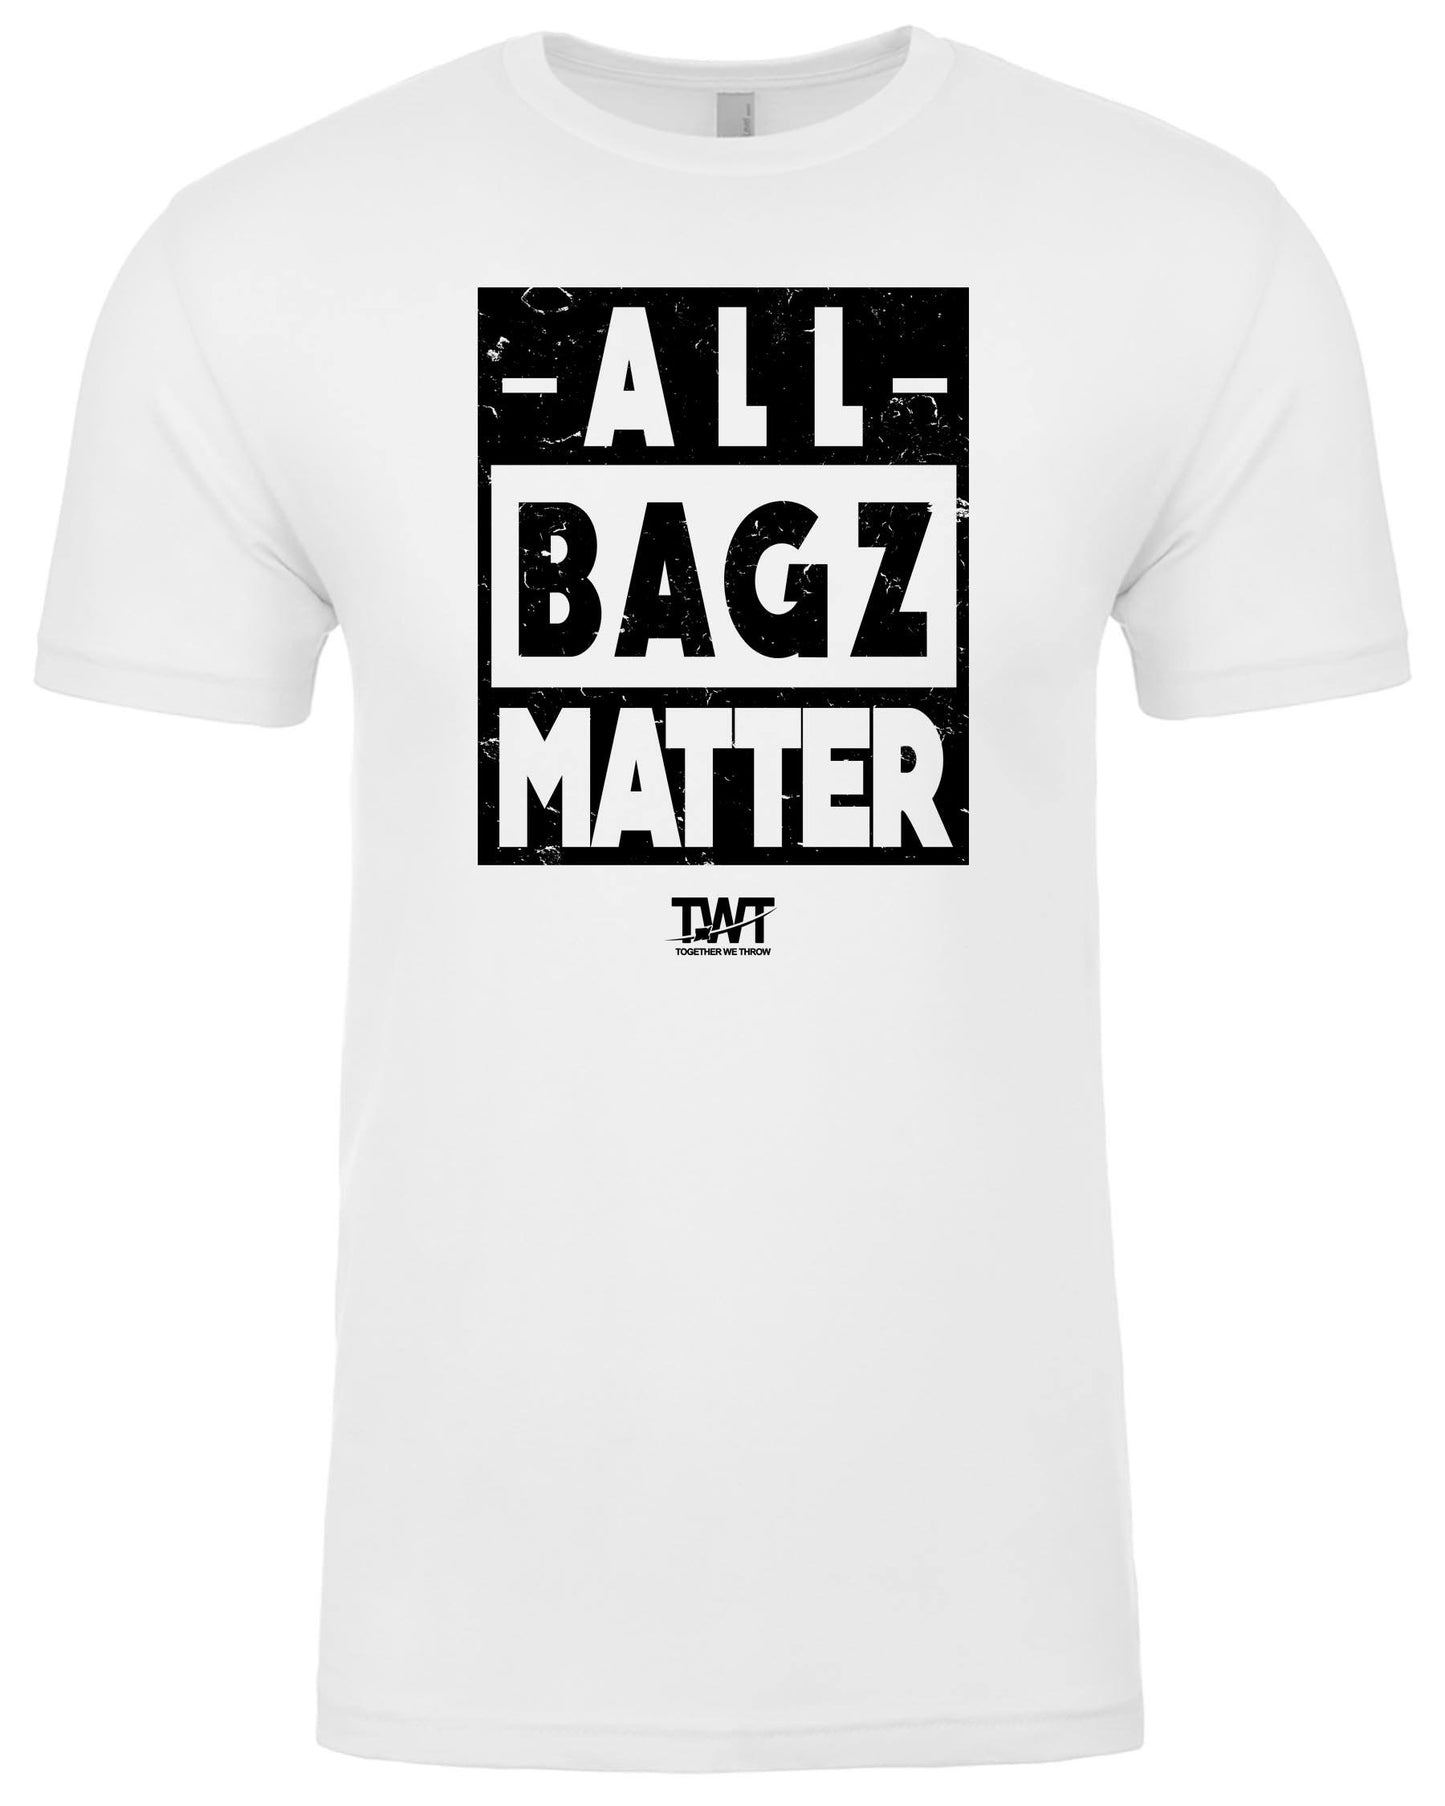 All Bagz Matter Shirt